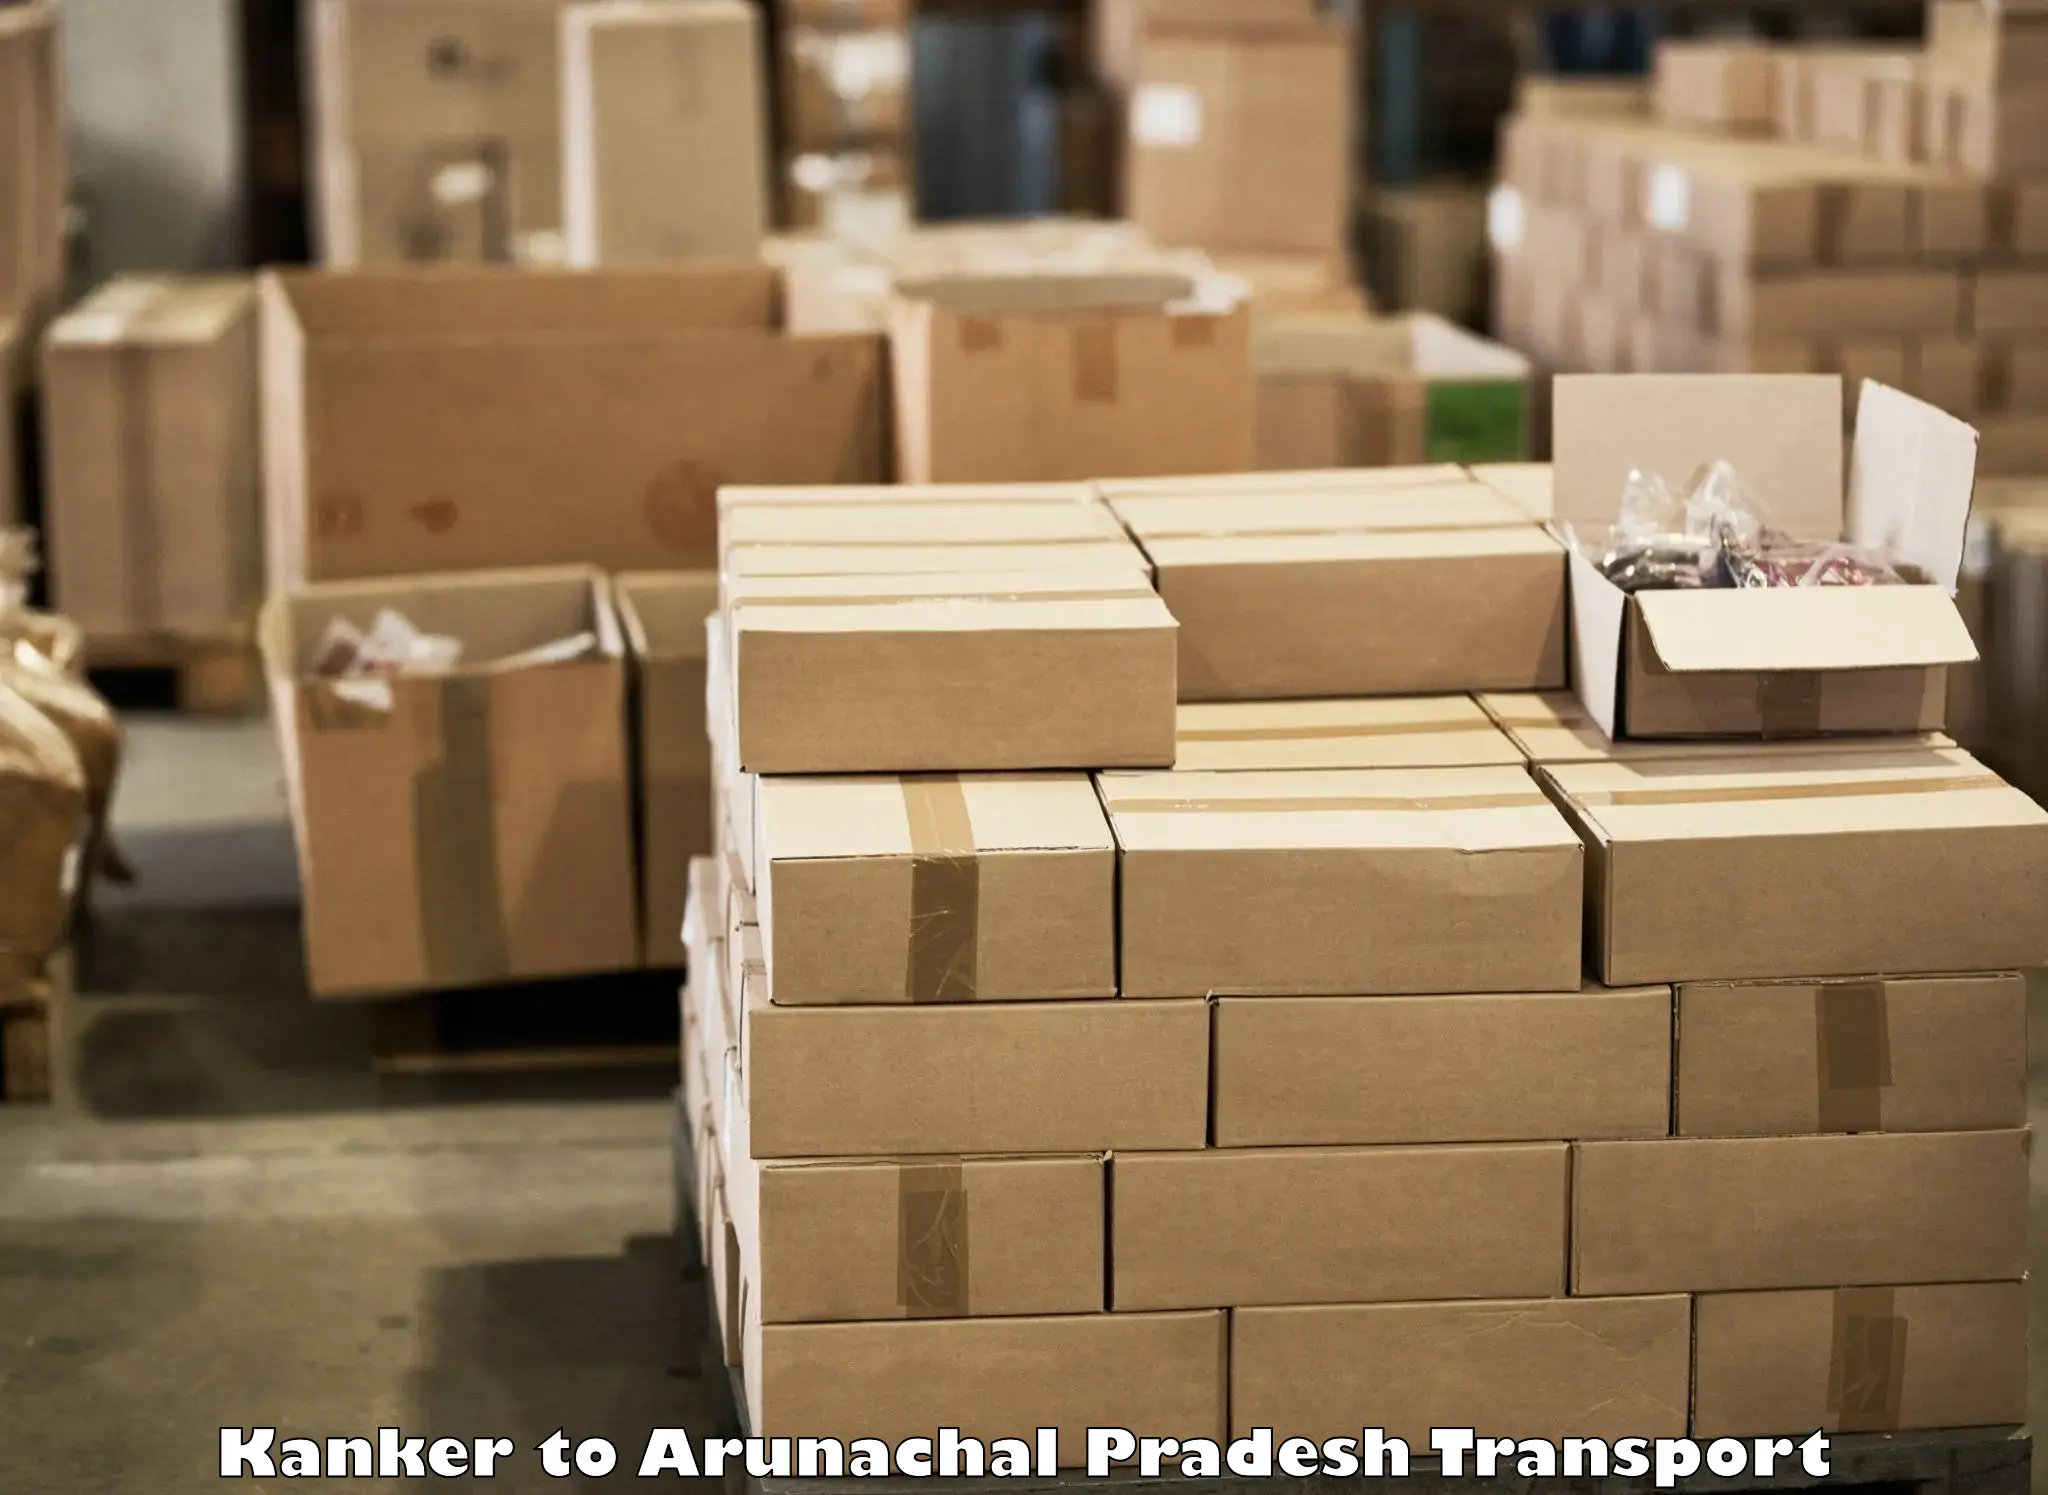 Container transport service Kanker to Arunachal Pradesh